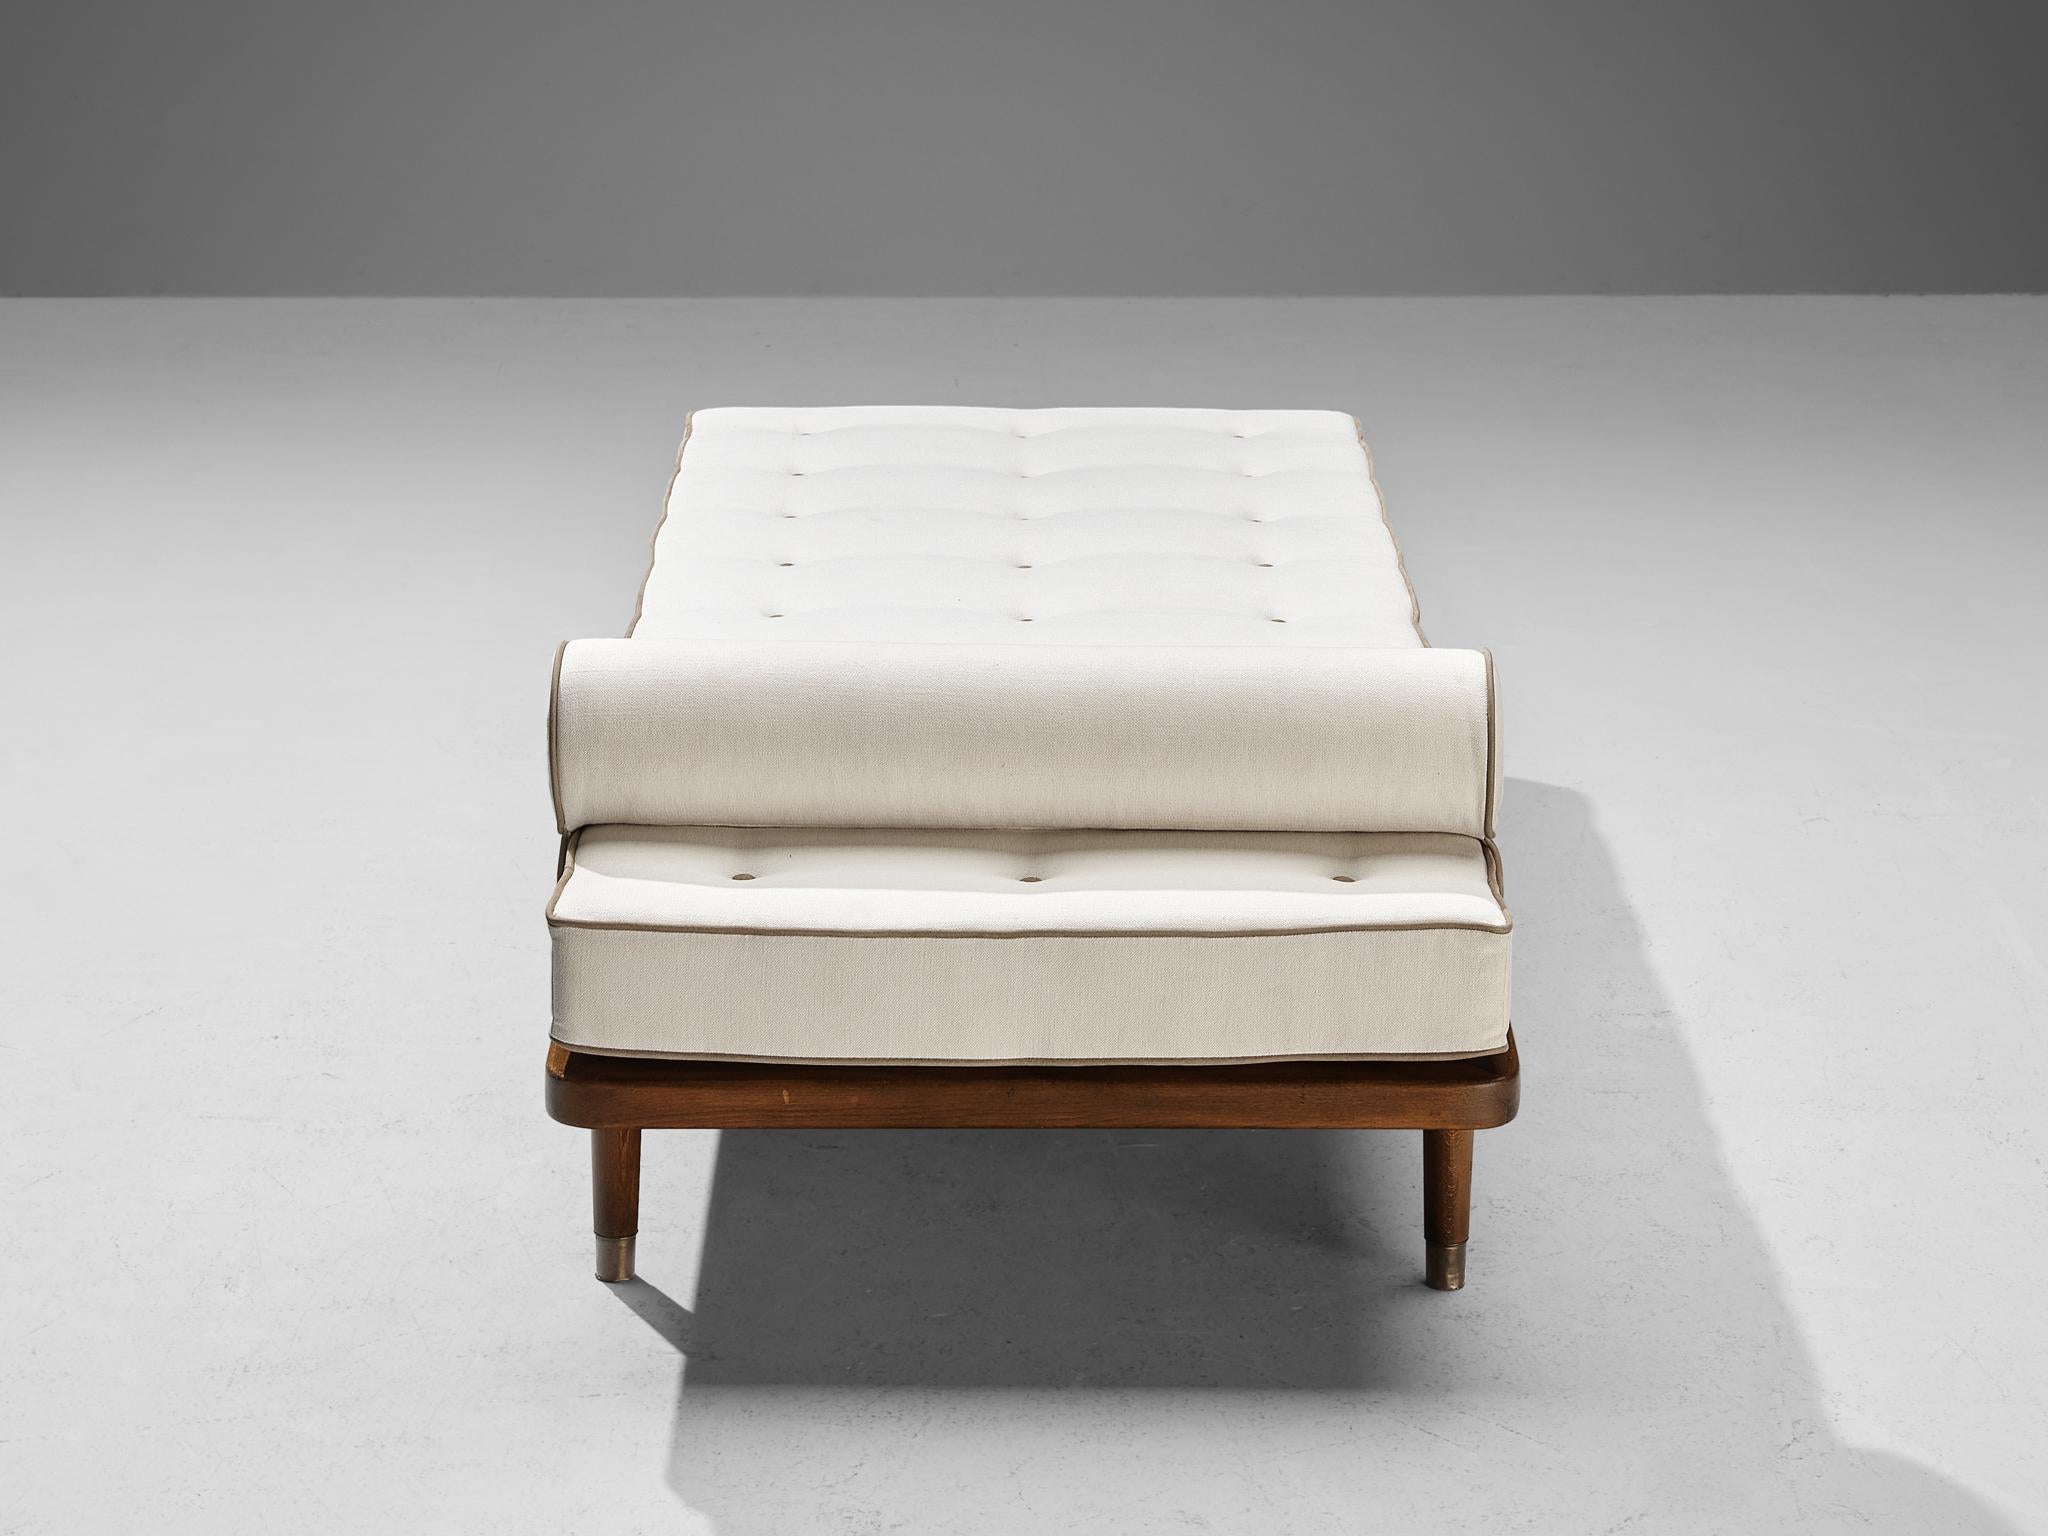 Liege, Buche, Messing, Dänemark, 1950er Jahre

Ein einfaches und minimalistisches Bett, das im Einklang mit den Prinzipien des Scandinavian Modern Design entworfen wurde. Mit seinem klaren und übersichtlichen Erscheinungsbild rückt das Holzgestell